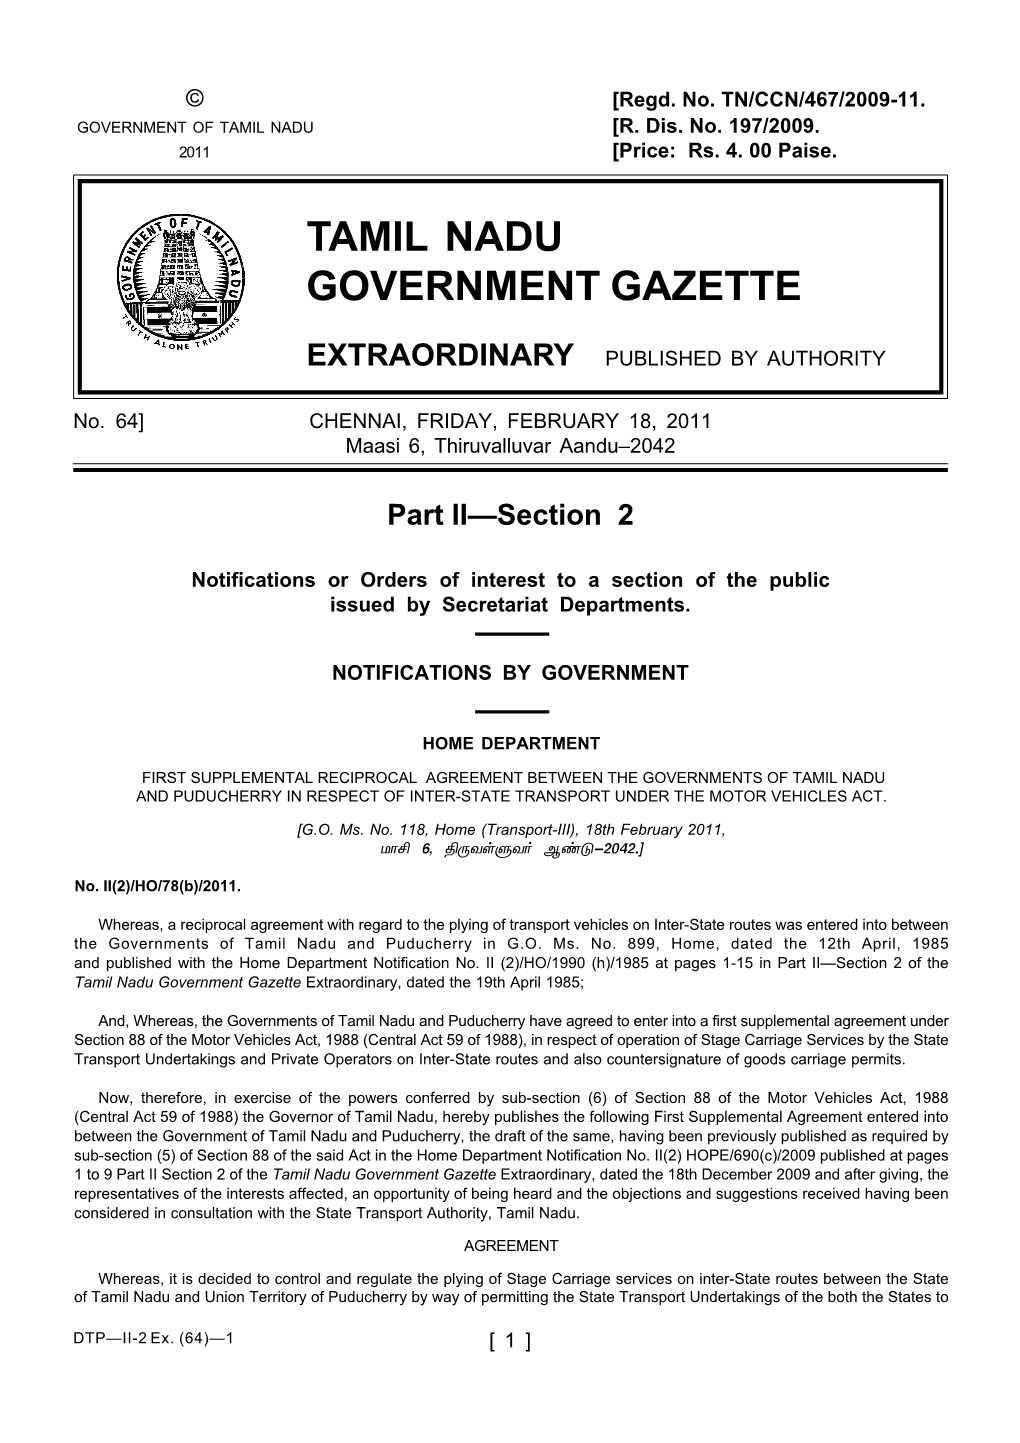 64] CHENNAI, FRIDAY, FEBRUARY 18, 2011 Maasi 6, Thiruvalluvar Aandu–2042